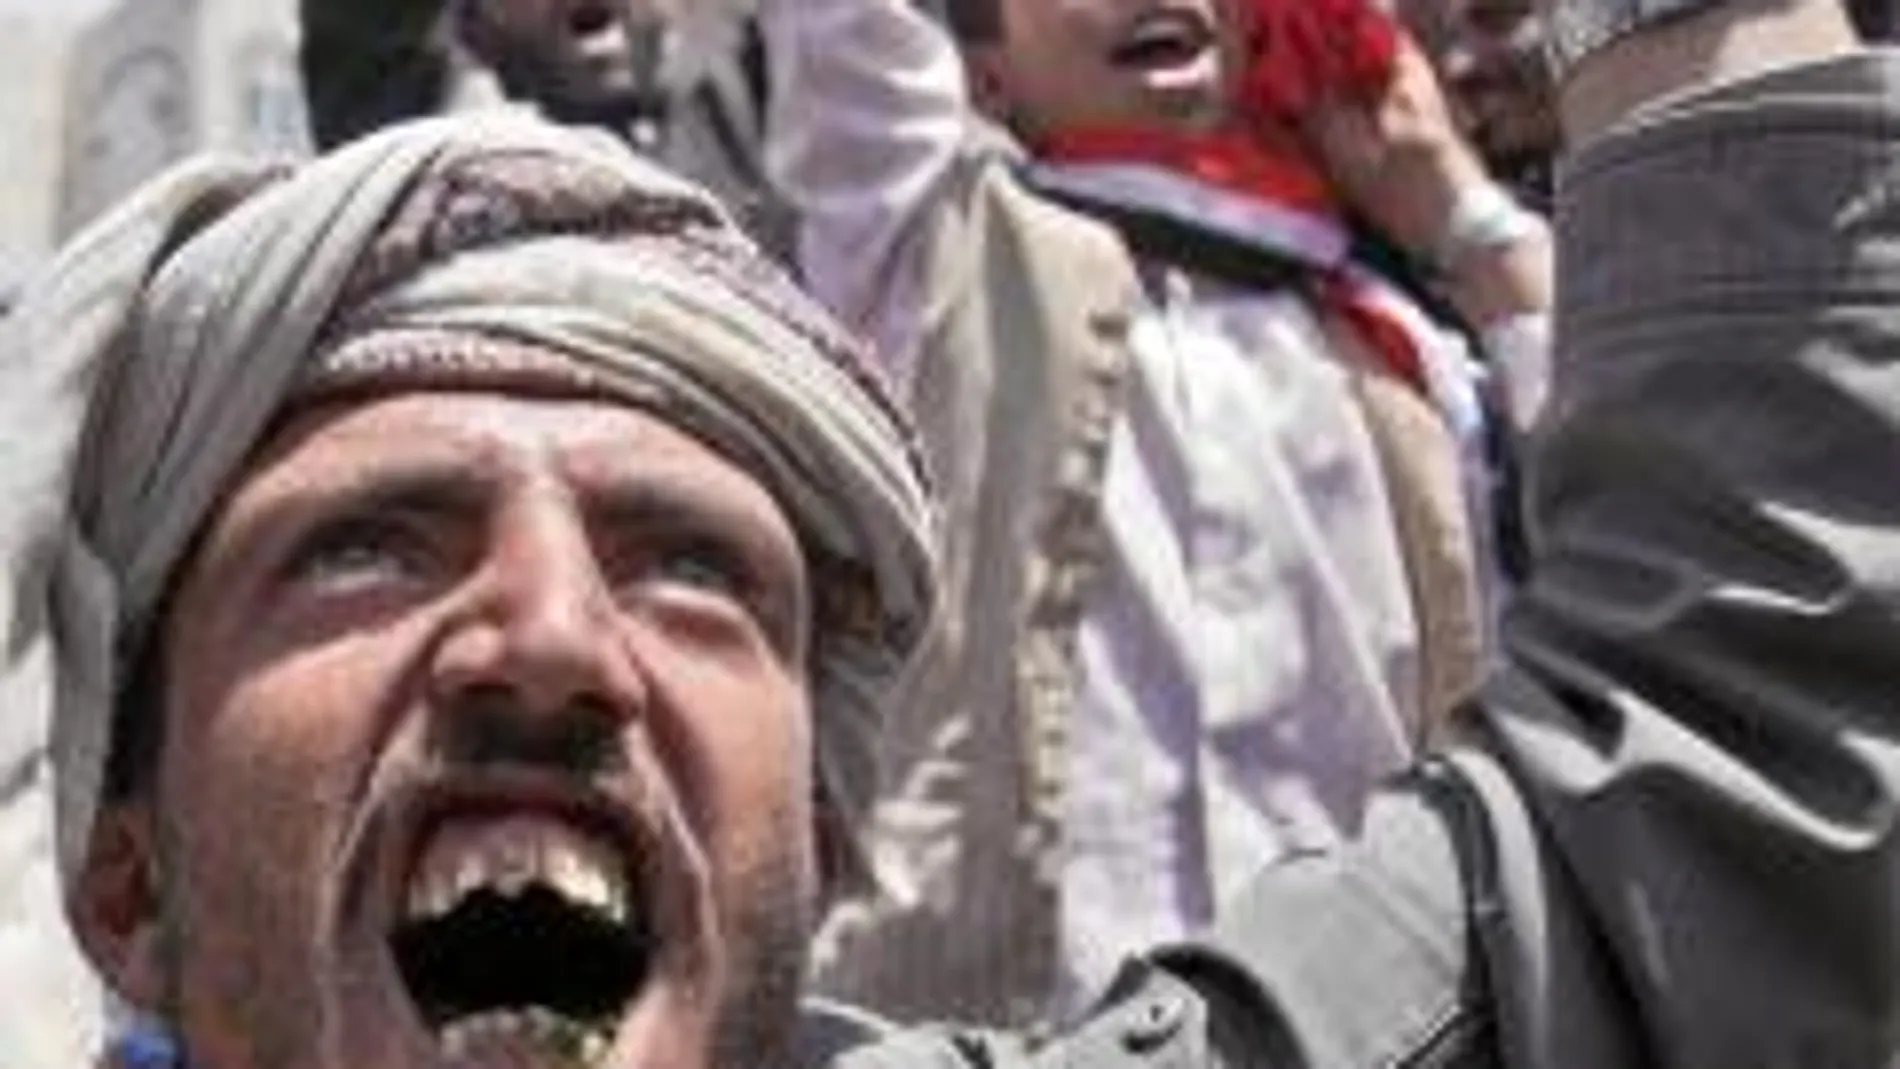 Los opositores desafiaron ayer la militarización de la capital para pedir la renuncia de Saleh